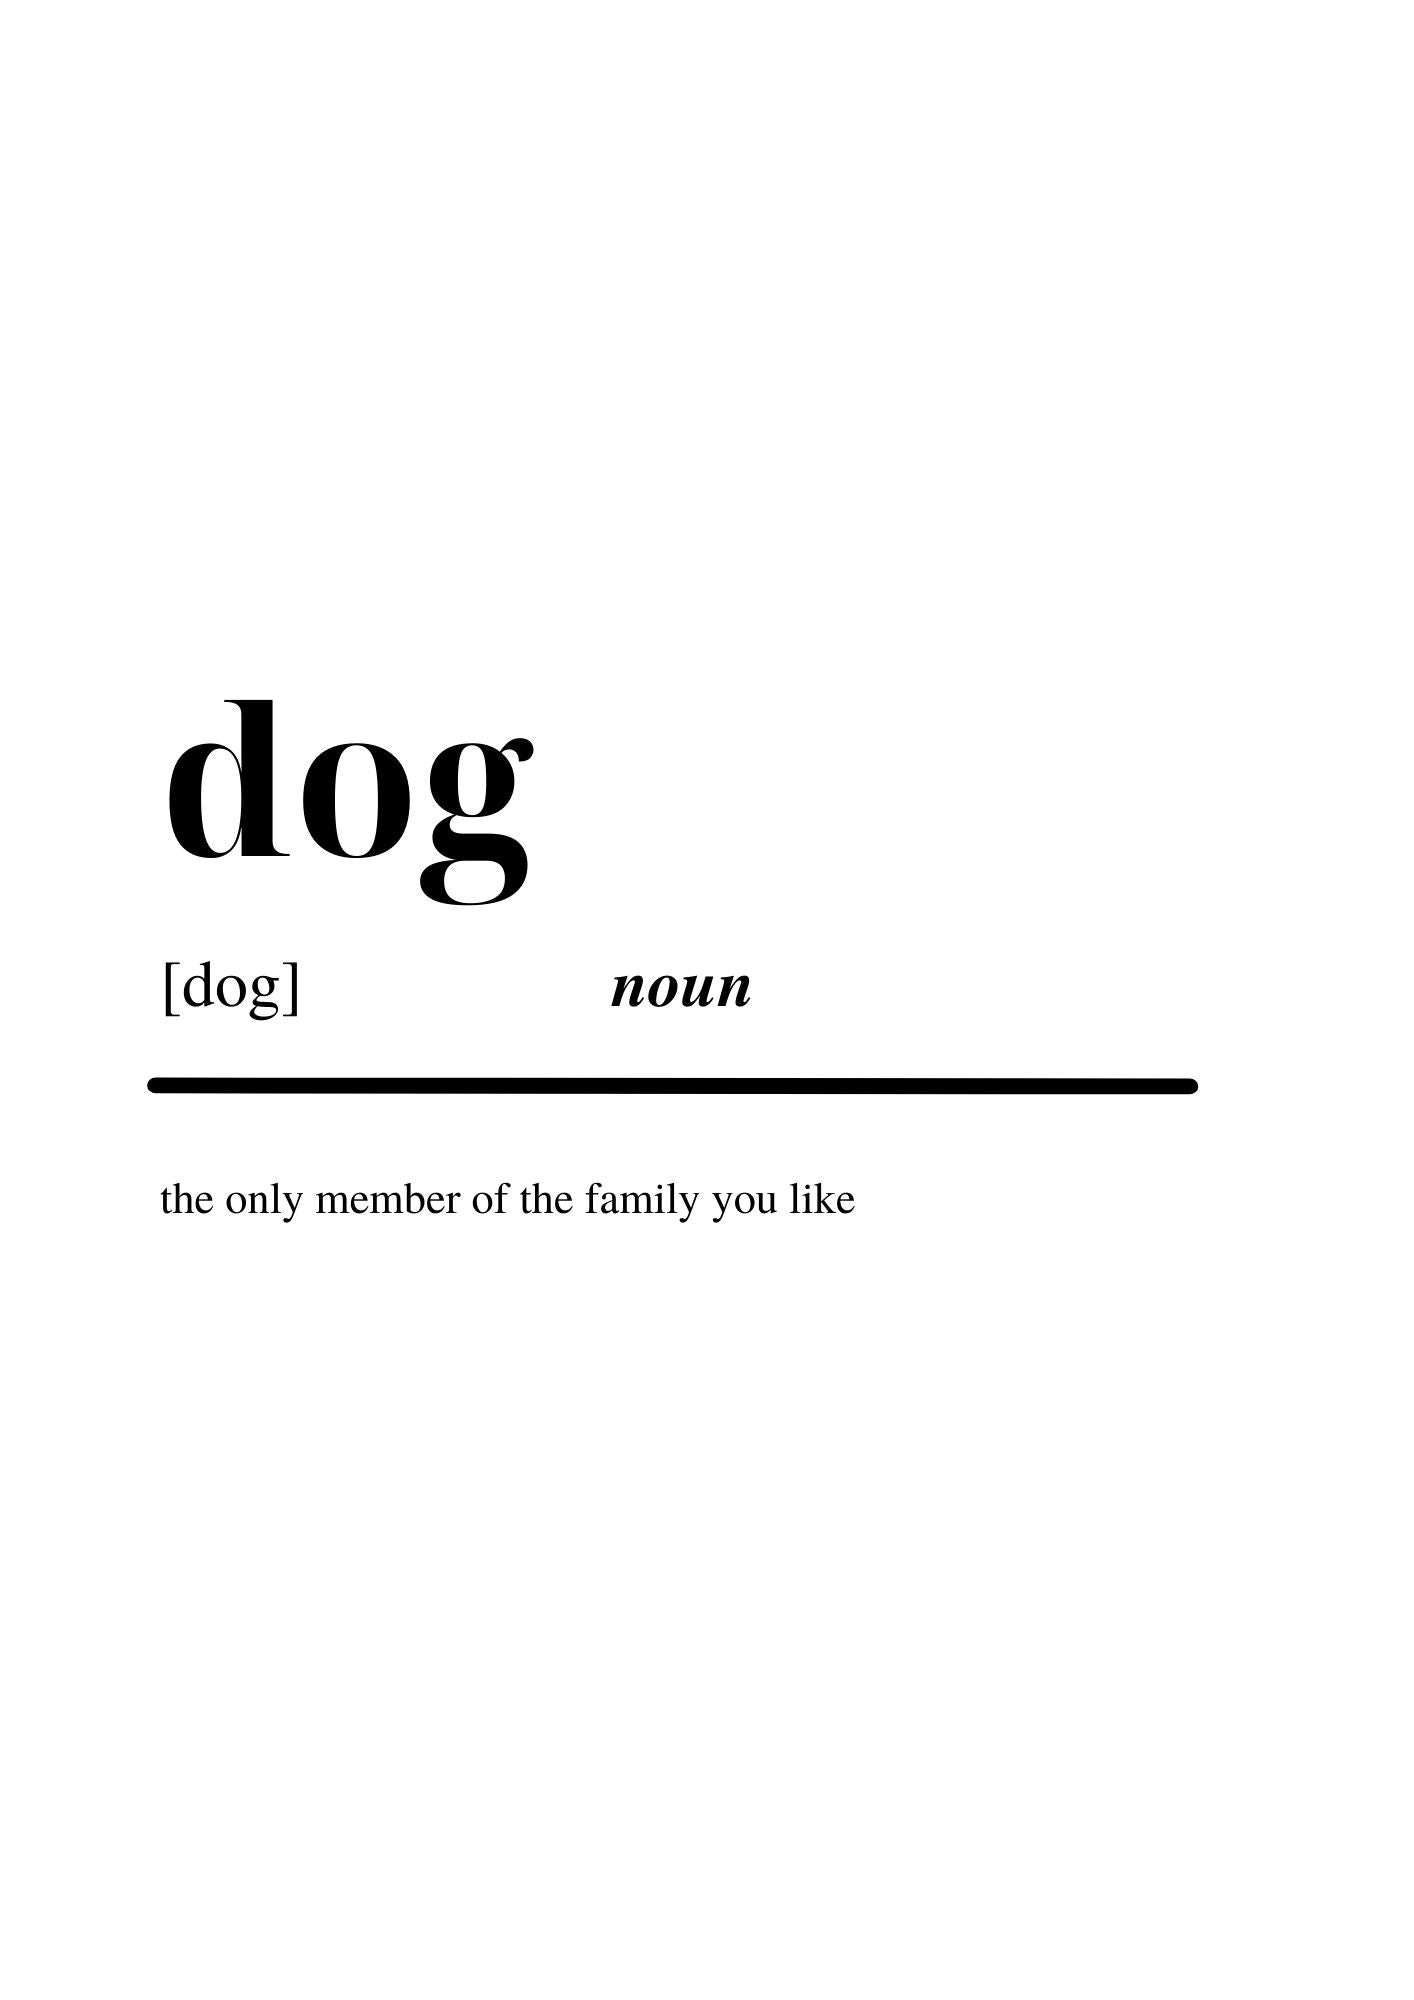 Dog noun poster